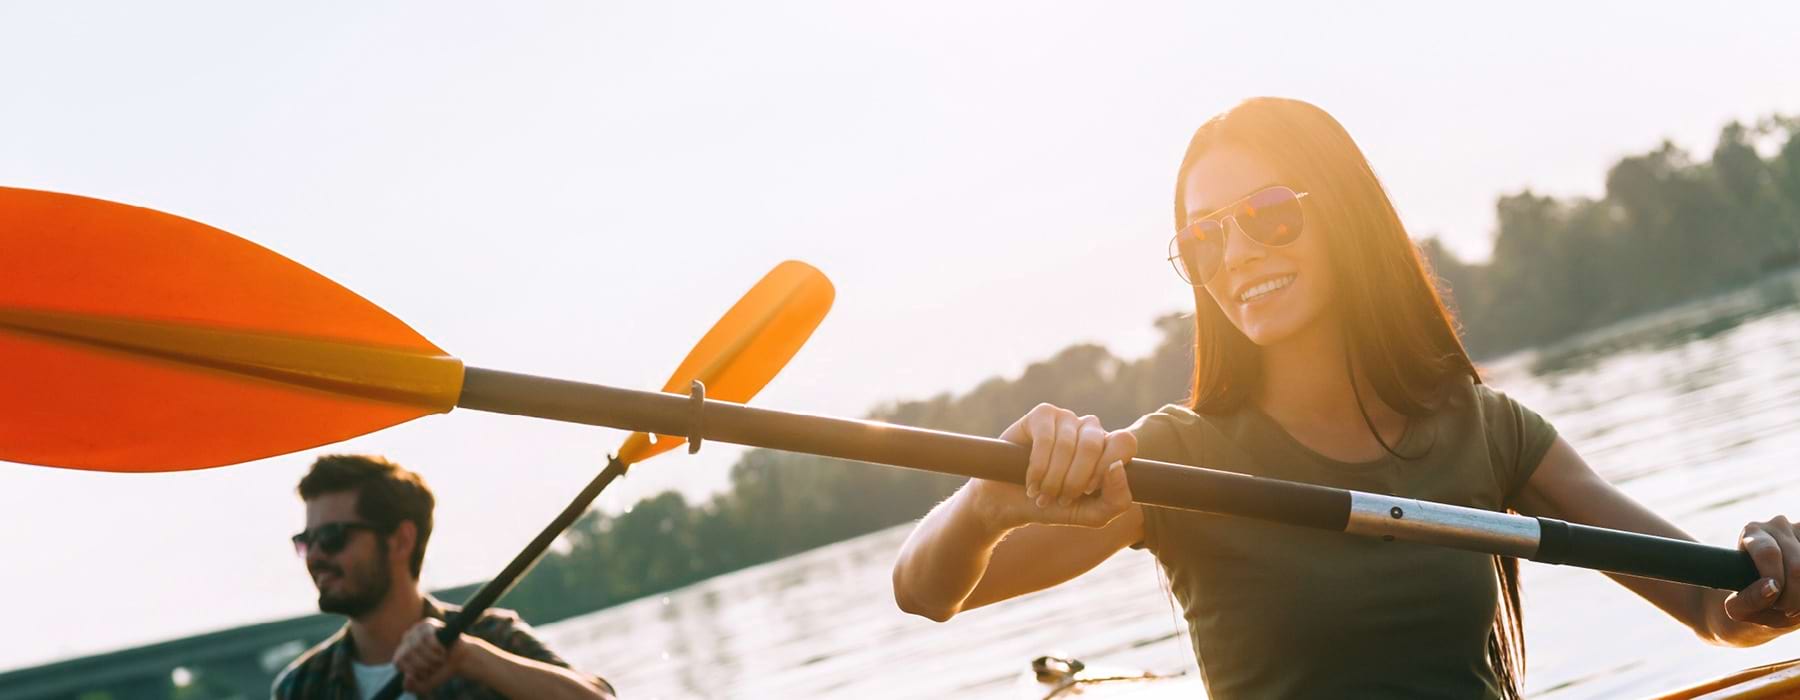 man and woman kayaking on lake